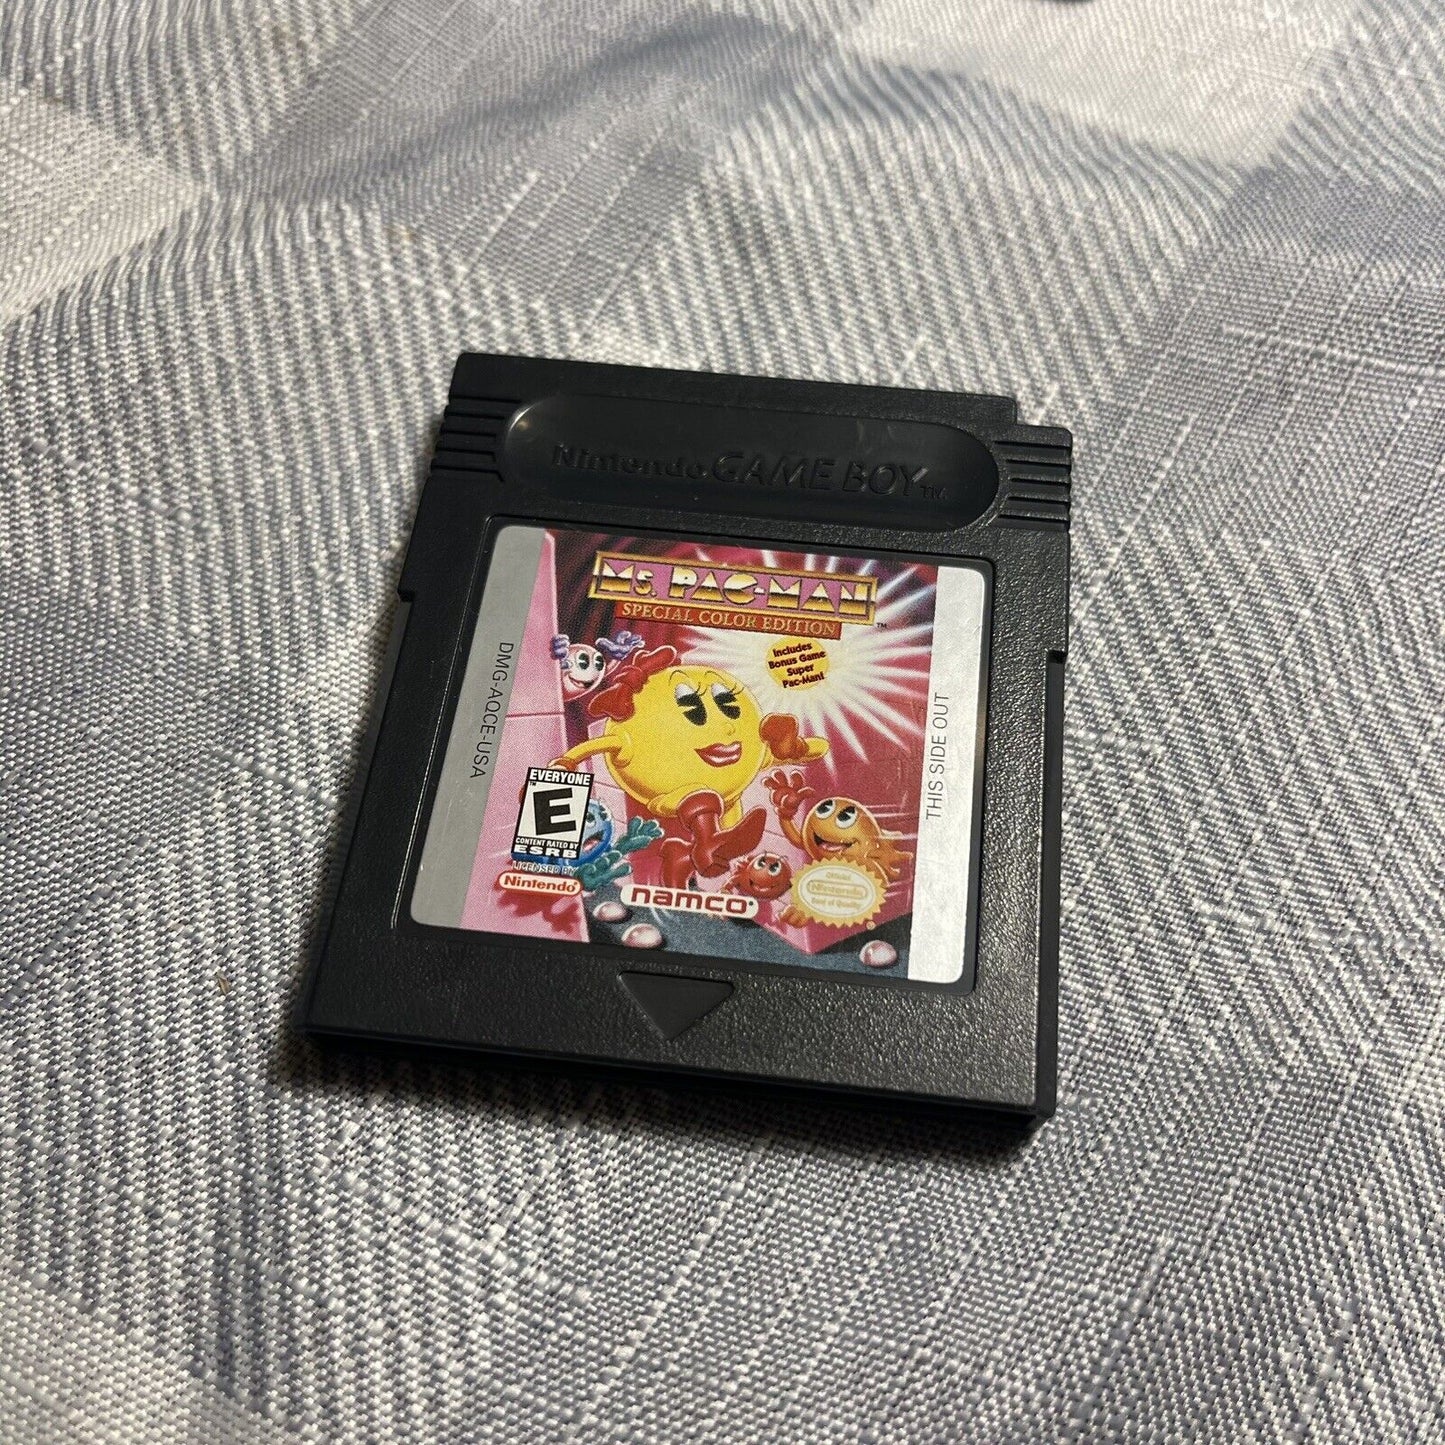 Ms. Pac-Man (Nintendo Game Boy, 1993)